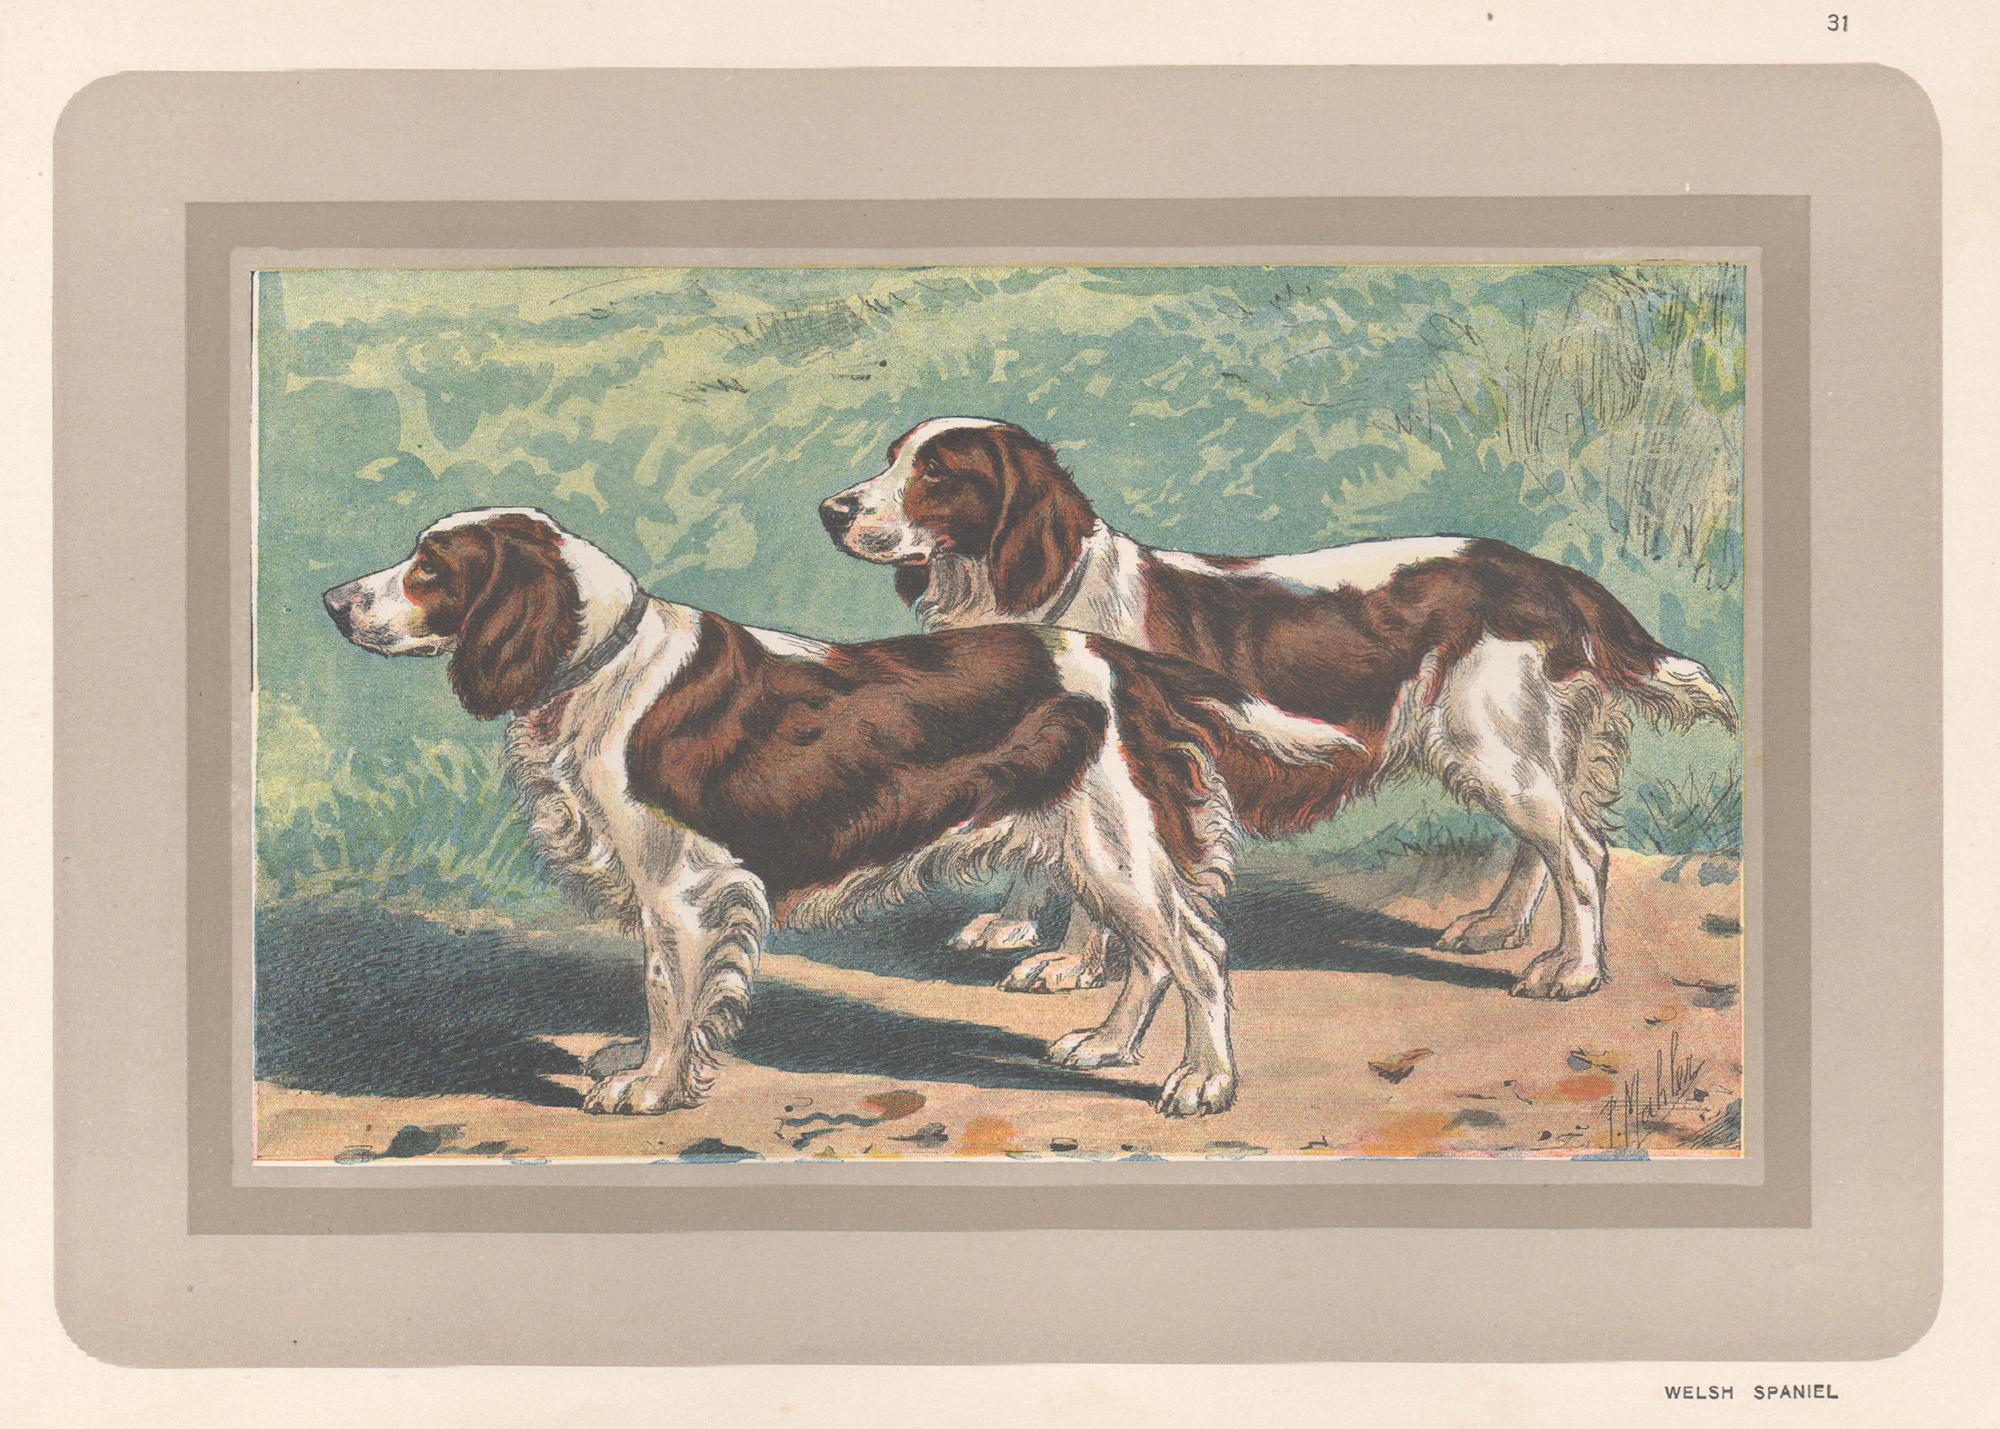 P. Mahler Animal Print – Welsh Spaniel, Französischer Chromolithographiedruck mit Hund, 1930er-Jahre